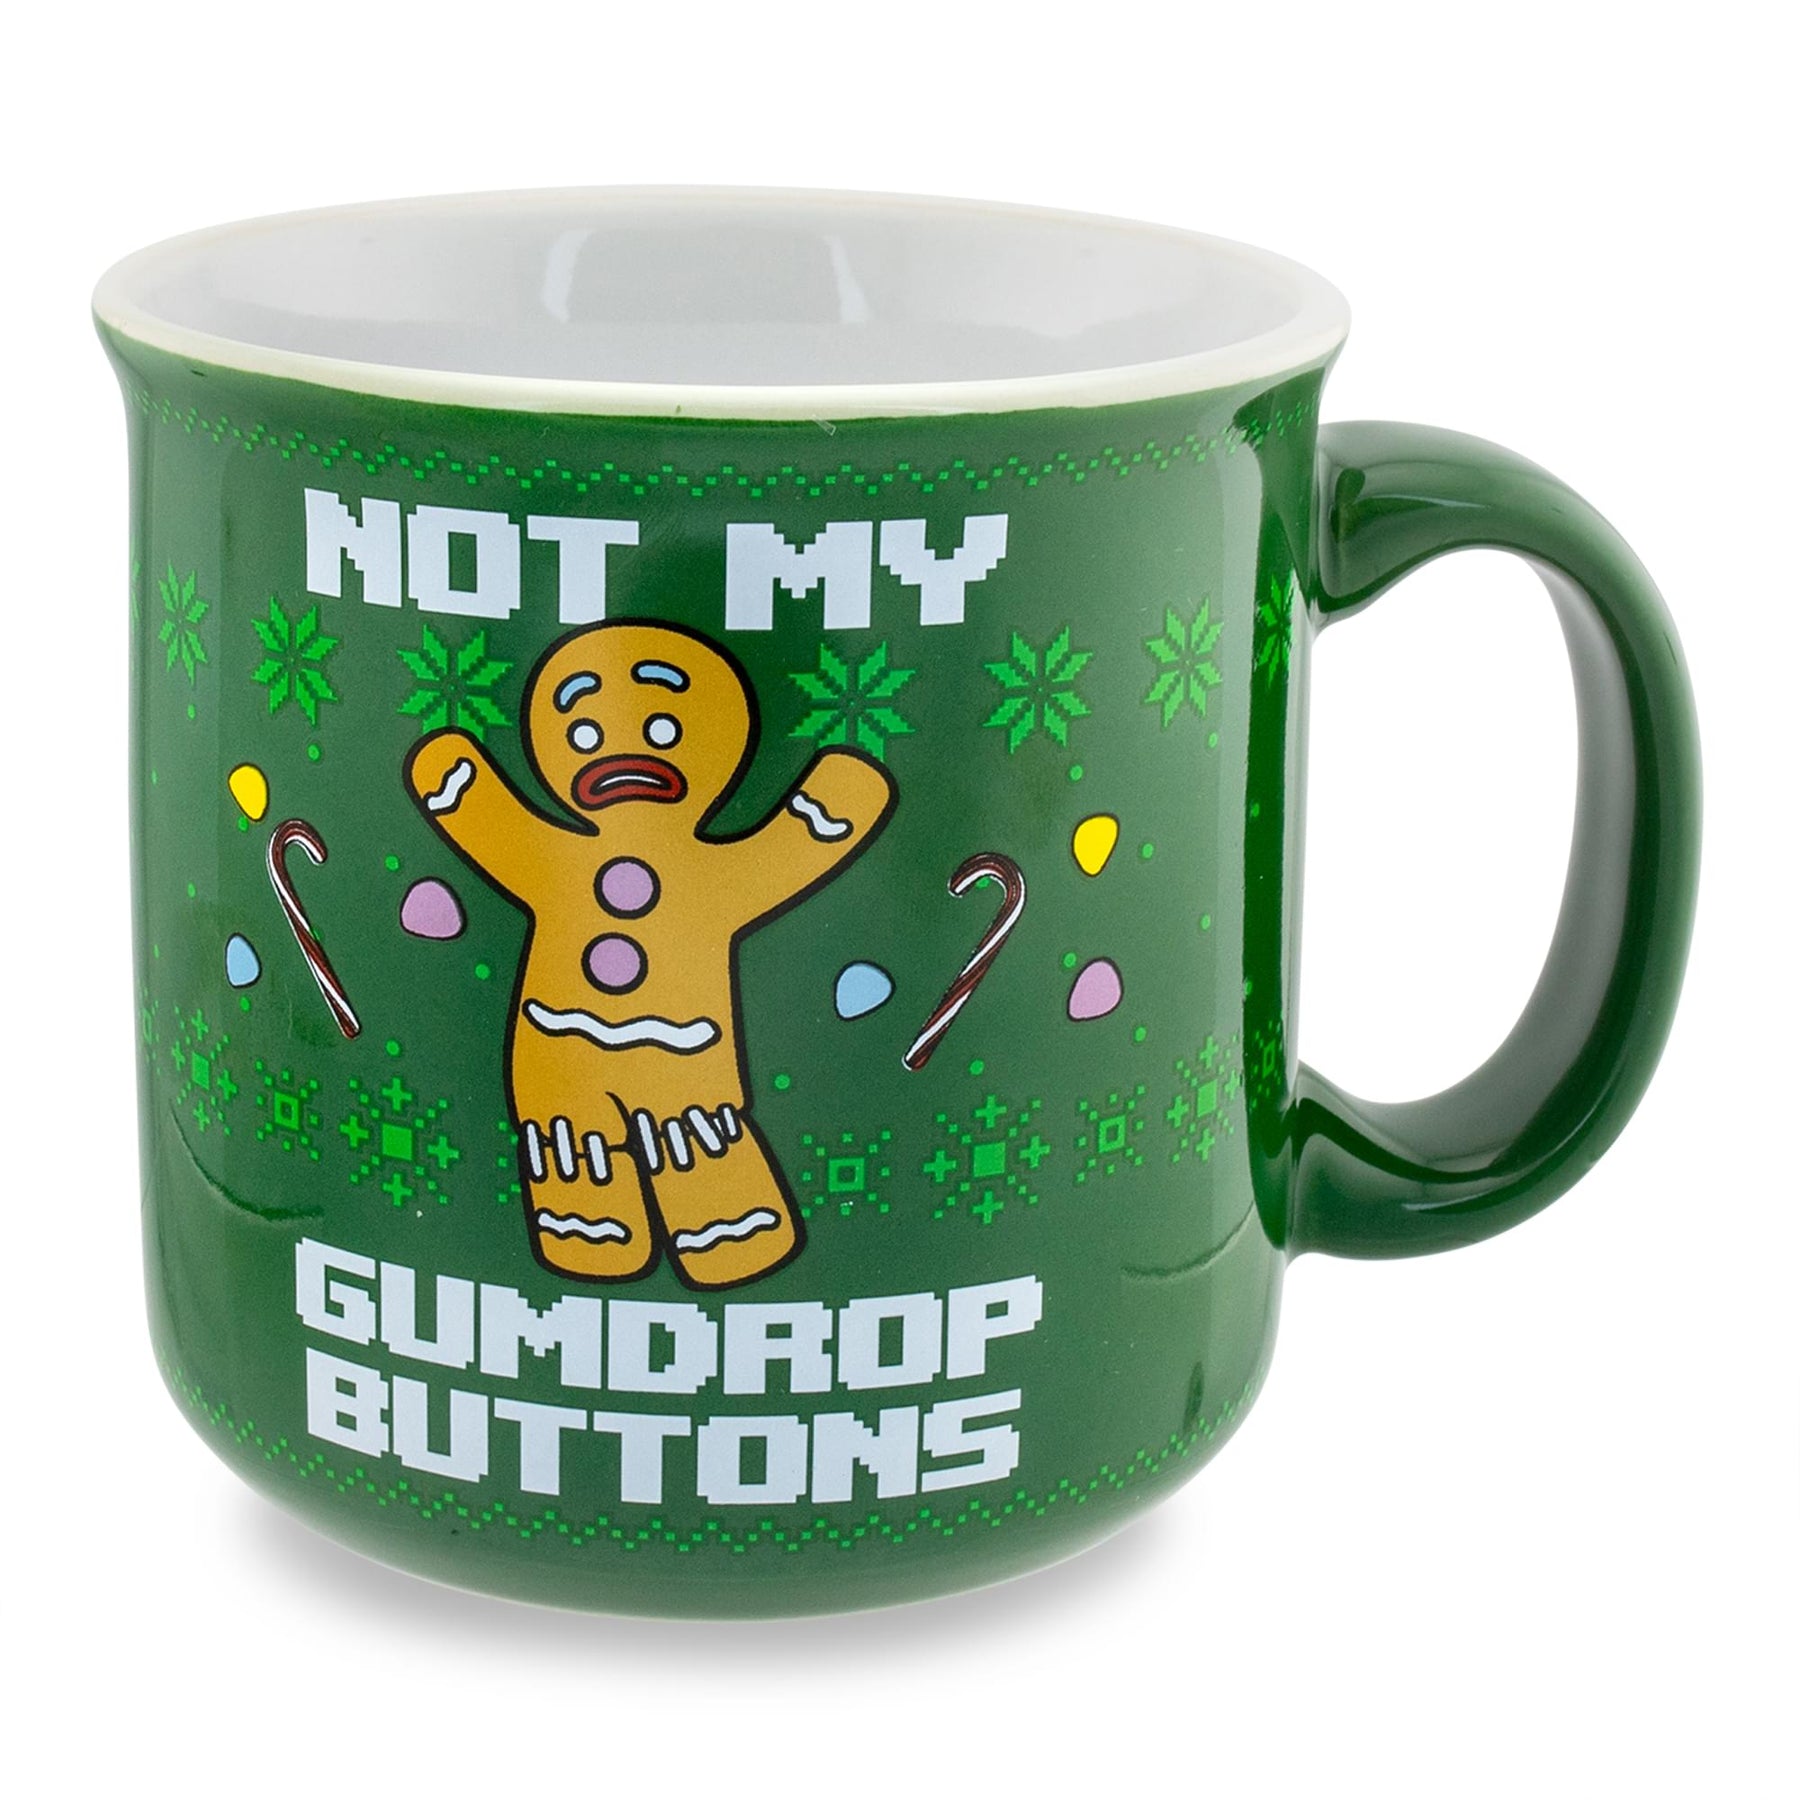 Shrek 20oz Camper Mug